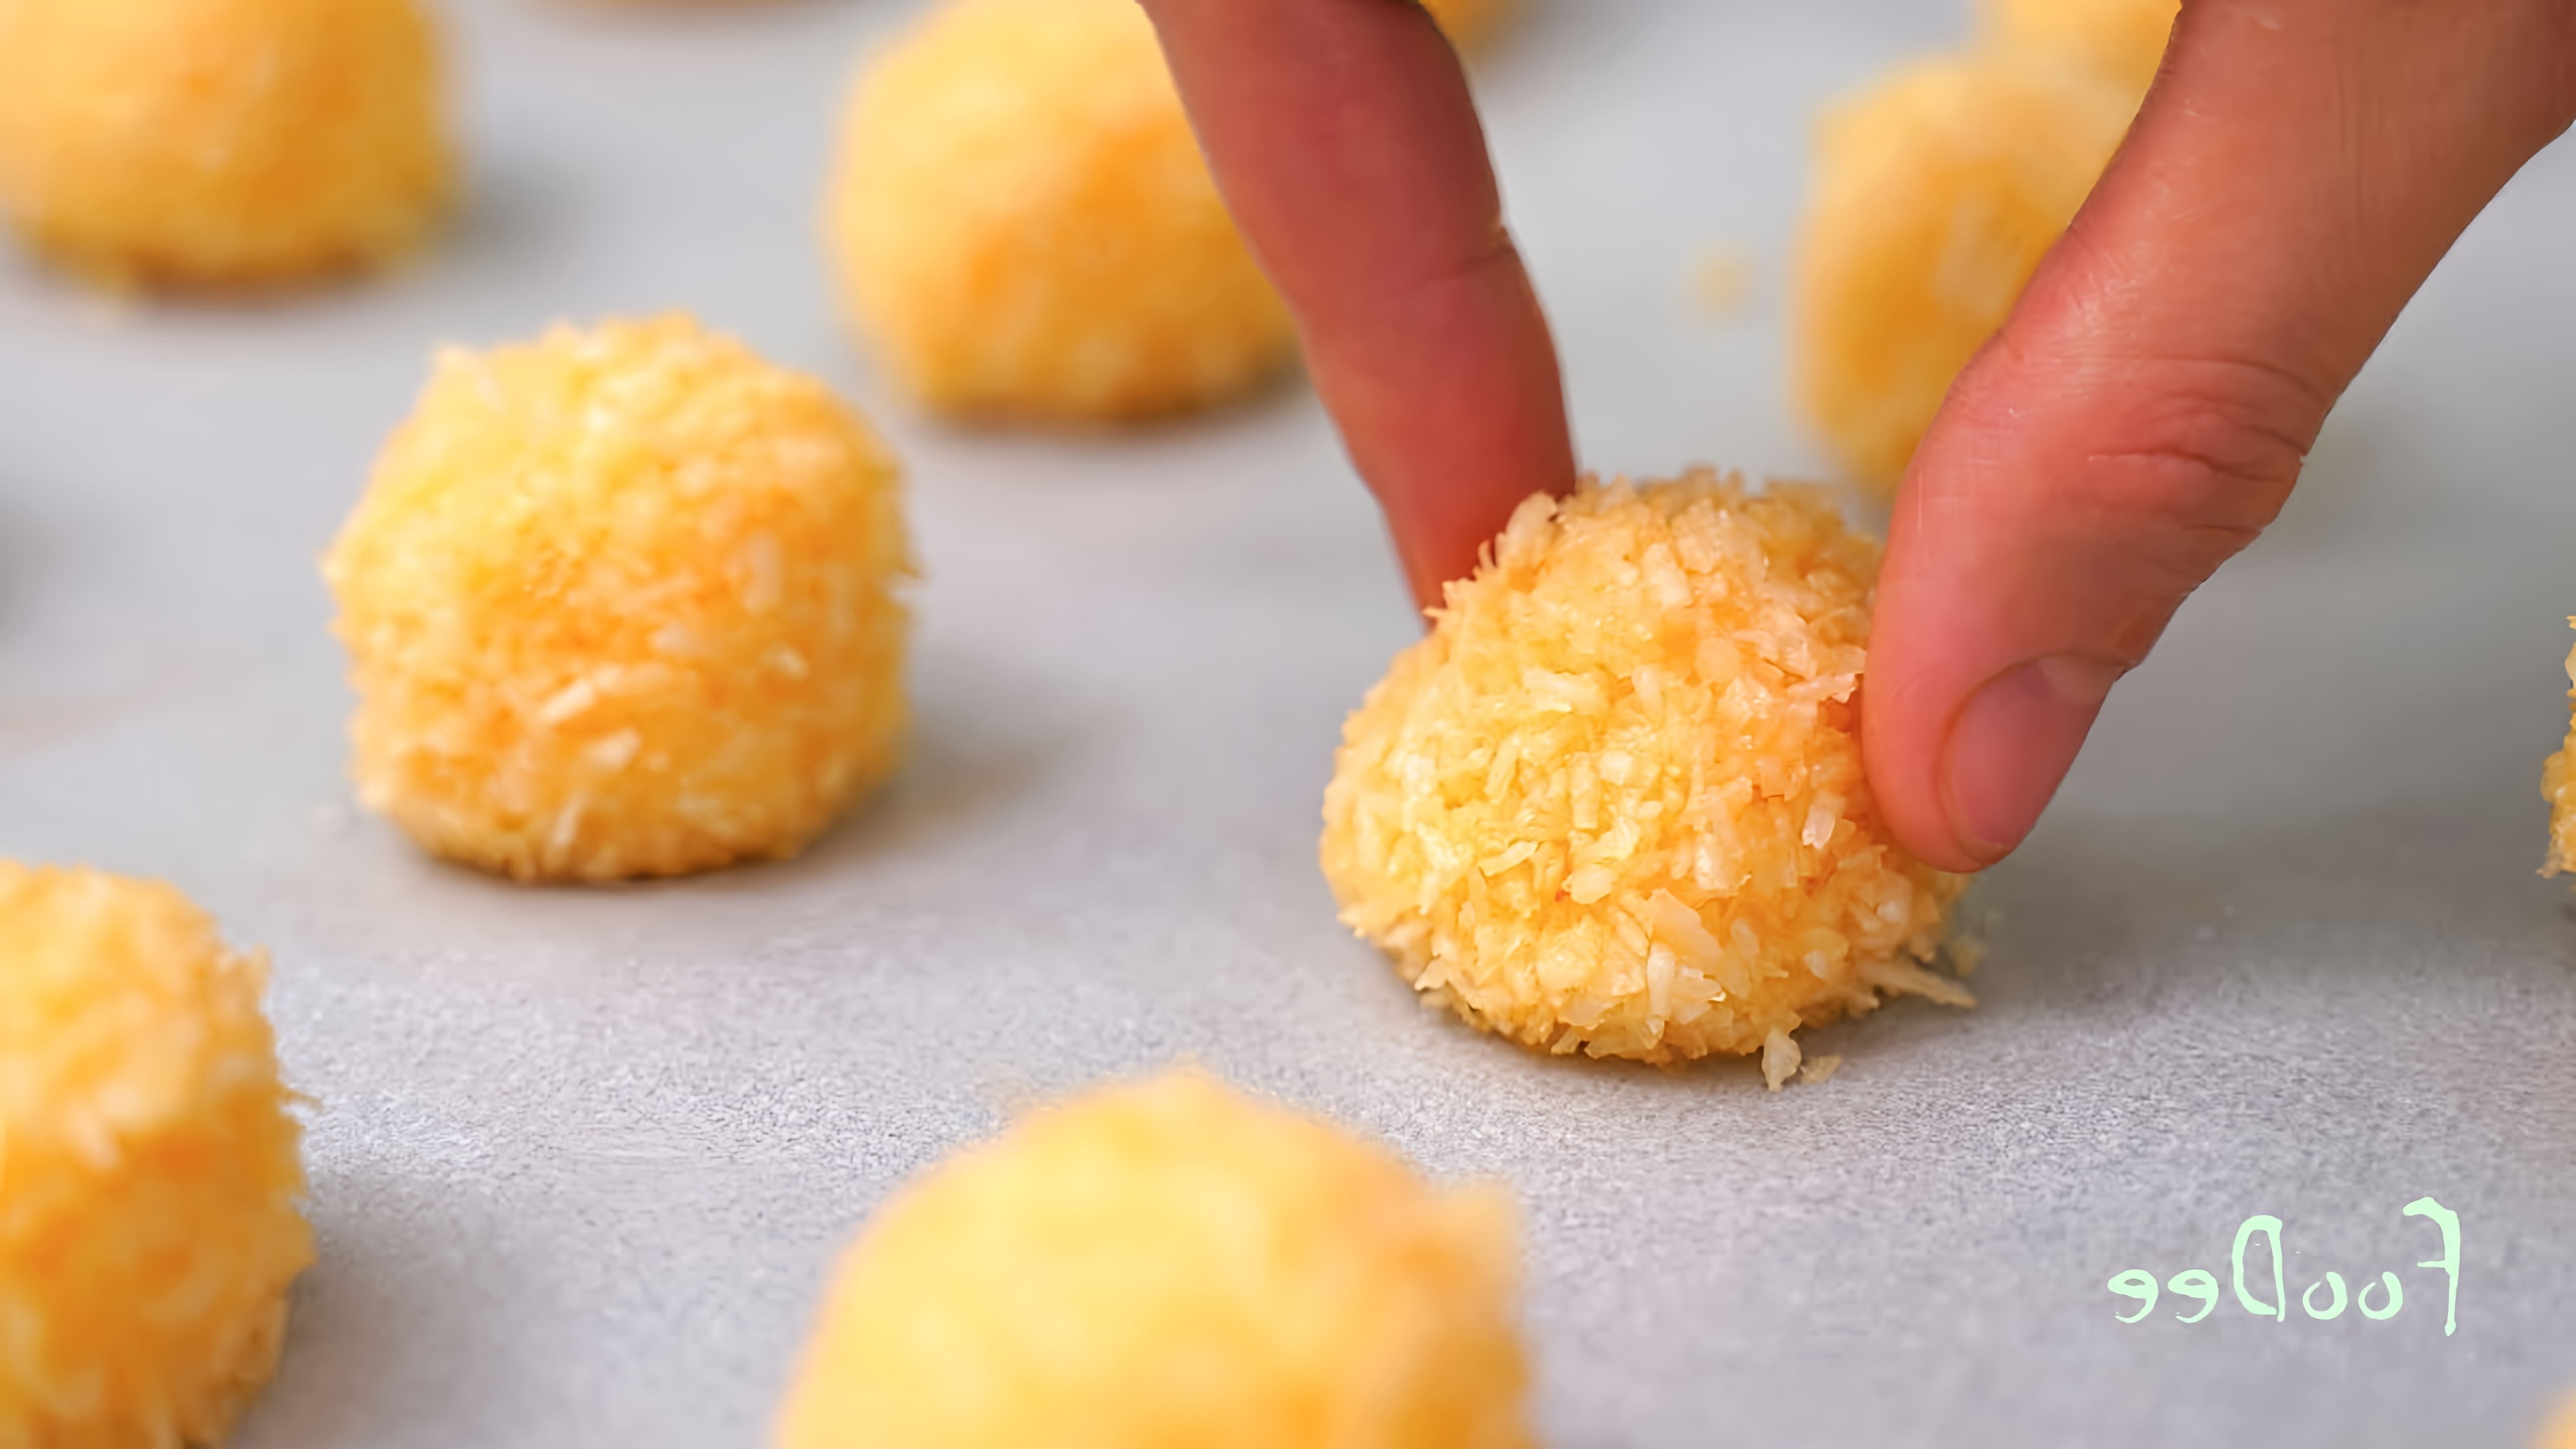 Видео как приготовить очень простое печенье всего за 5 минут, используя только 3 ингредиента - яйца, сахар и кокосовую стружку